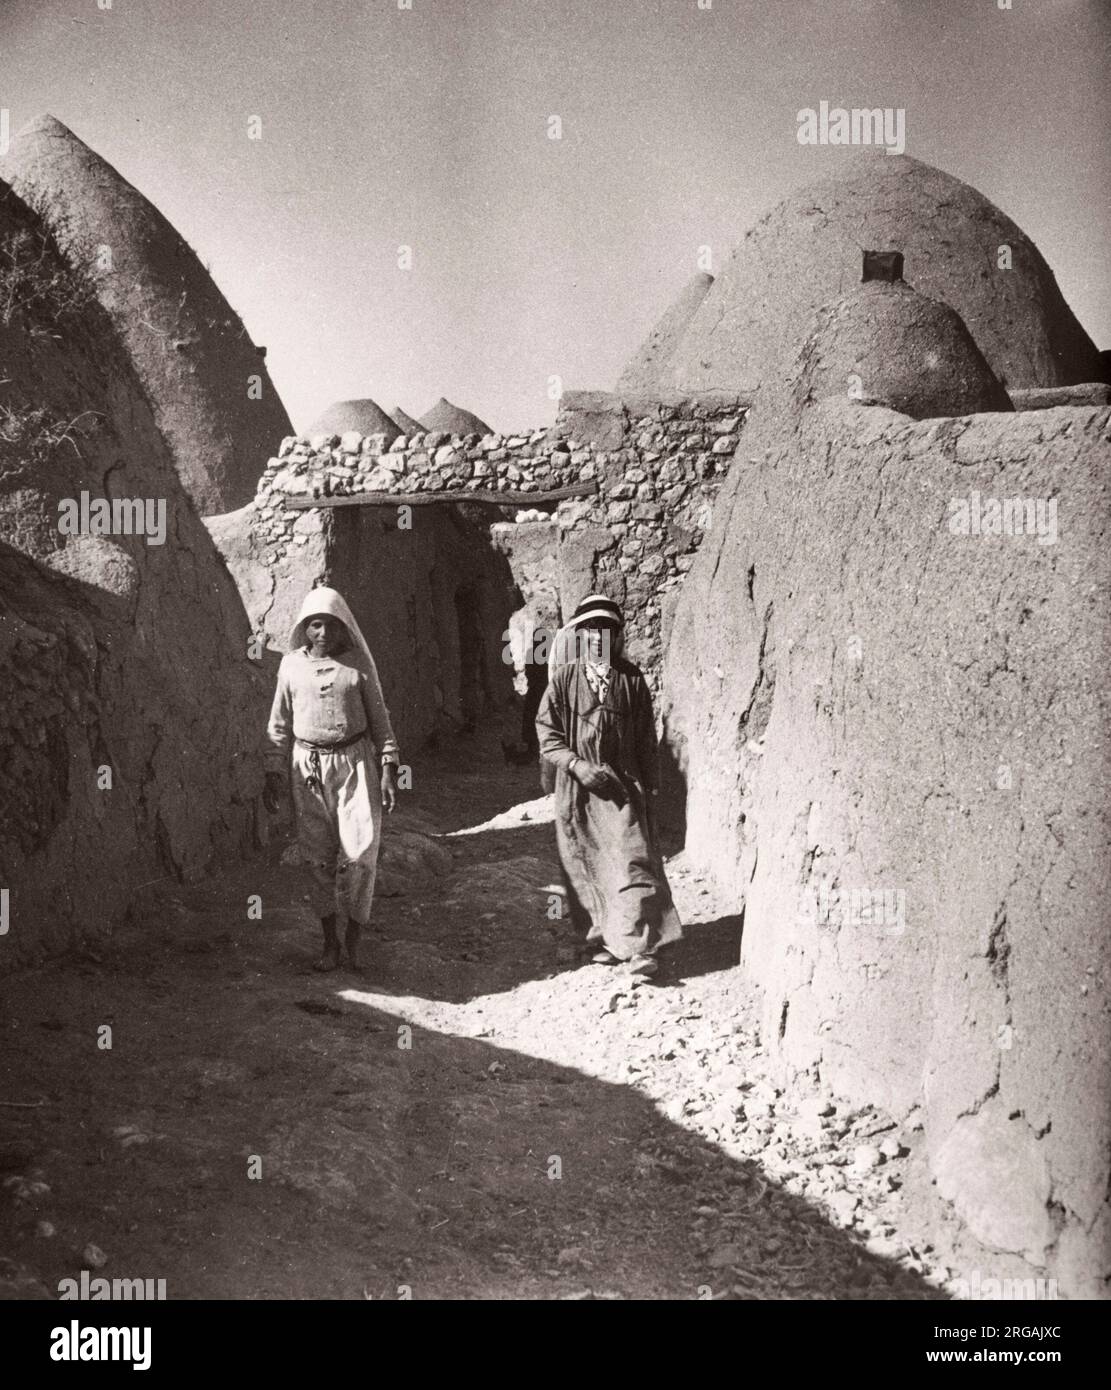 1943 Syrie - Kafer ou Kafr Halab - village avec des maisons traditionnelles de ruches de boue Photographie par un officier de recrutement de l'armée britannique stationné en Afrique de l'est et au Moyen-Orient pendant la Seconde Guerre mondiale Banque D'Images